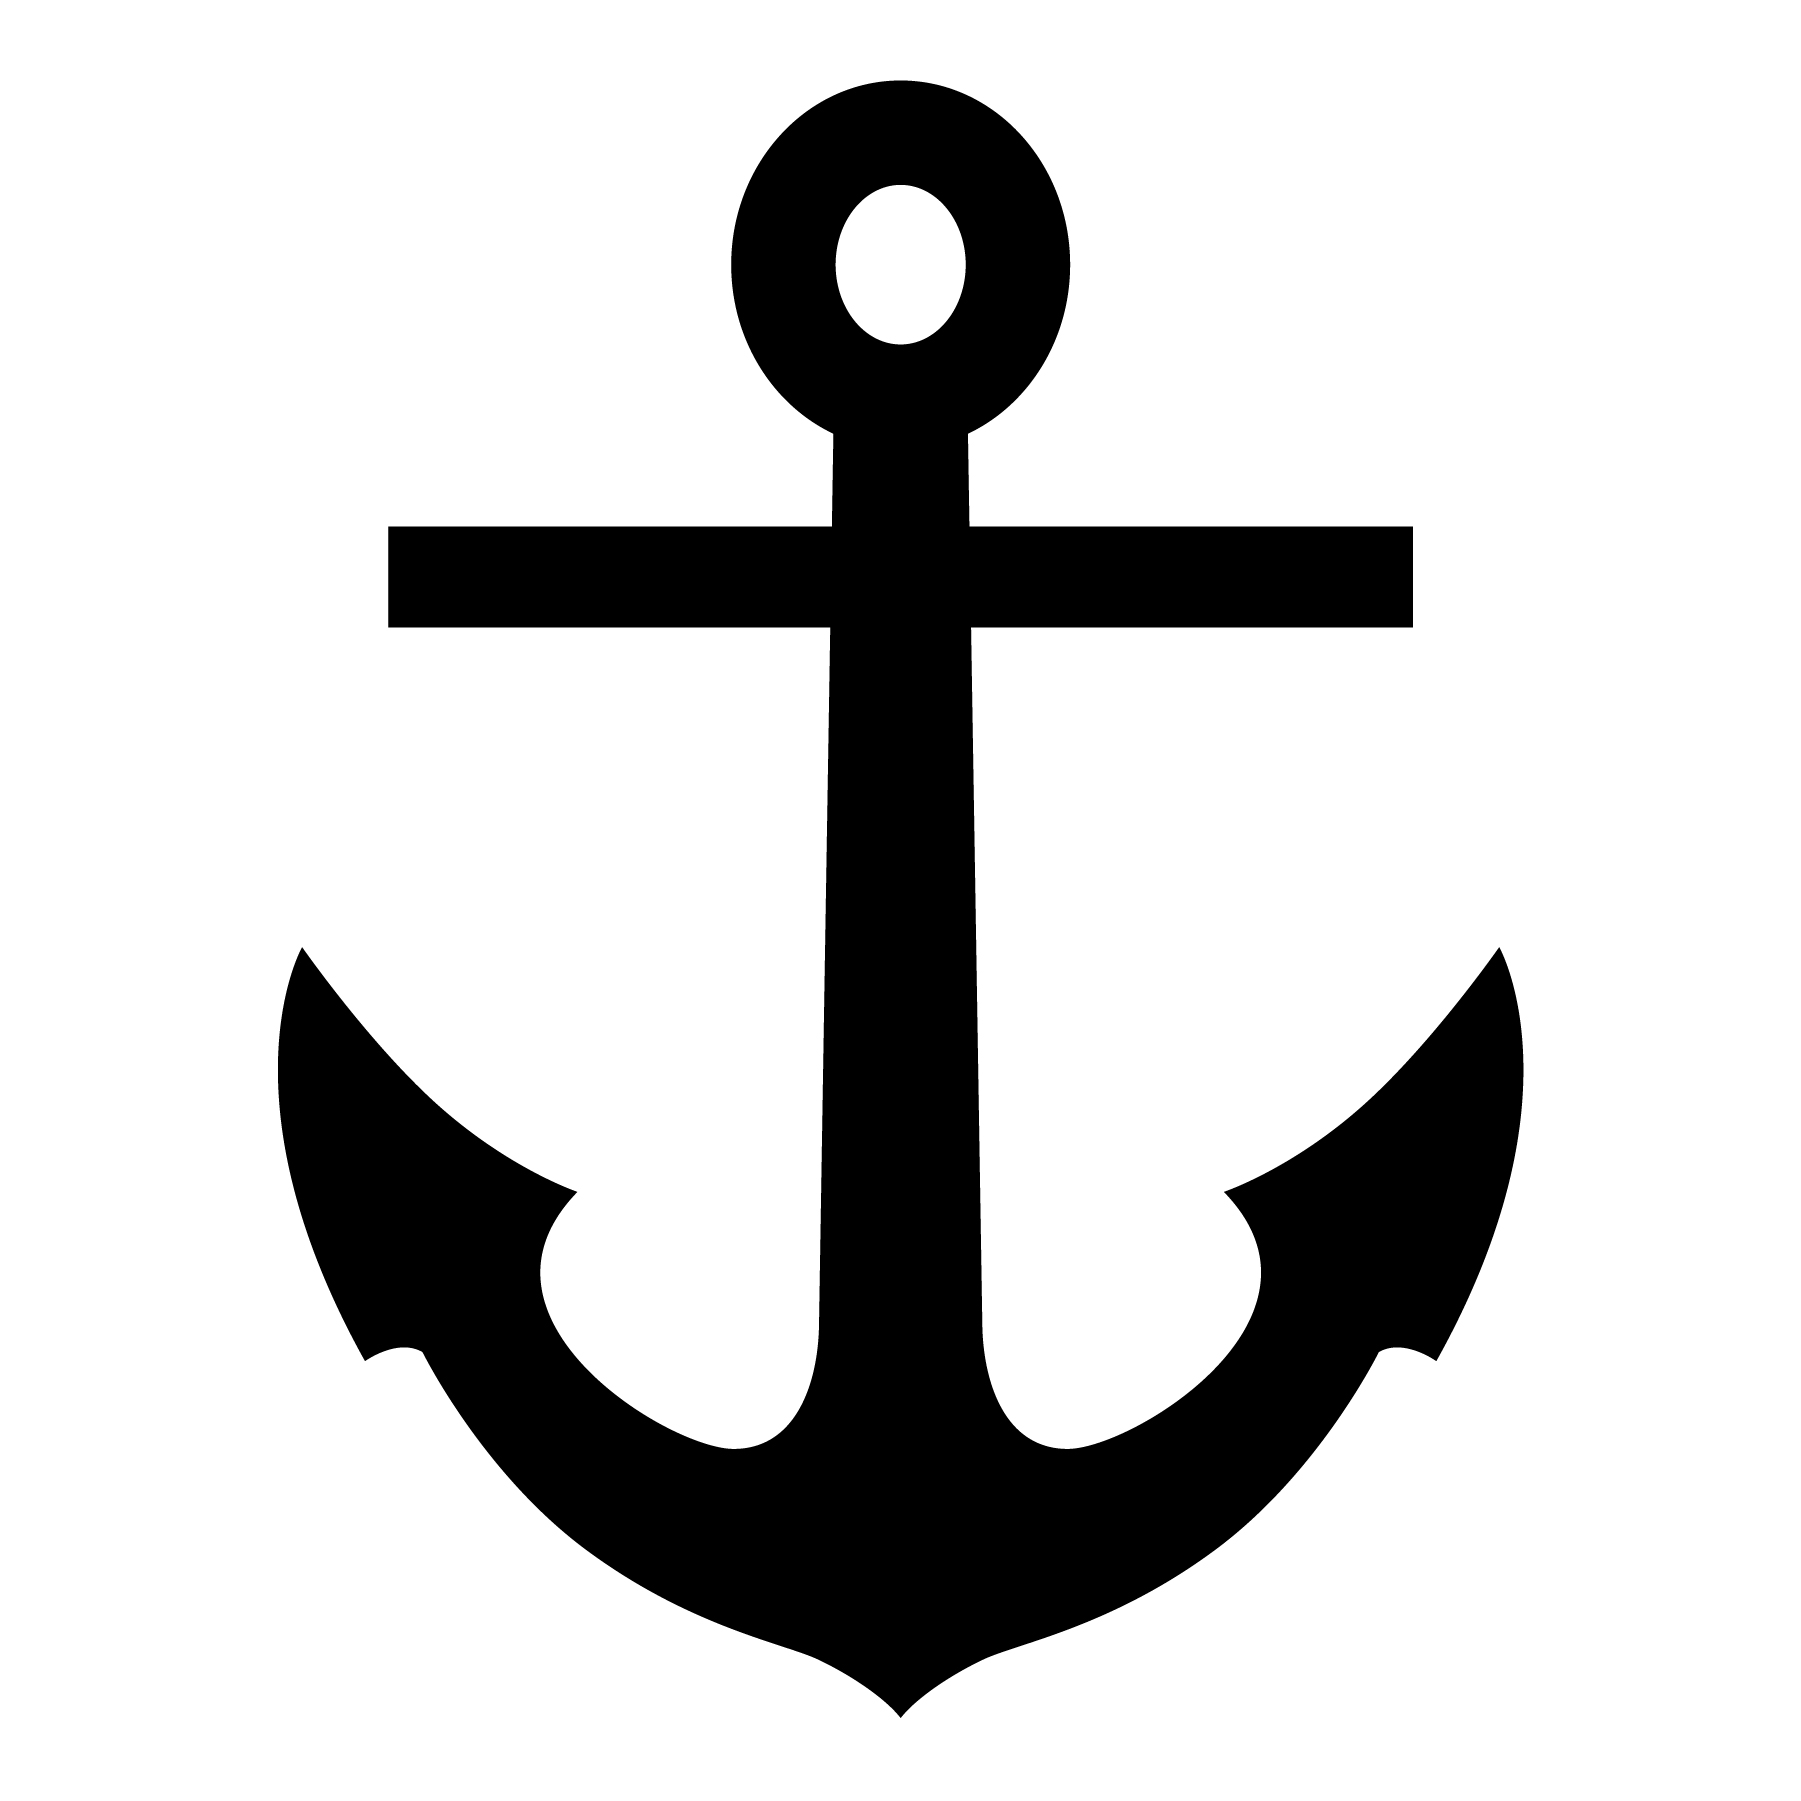 Download anchor nautical vector - Download Free Vectors, Clipart Graphics & Vector Art